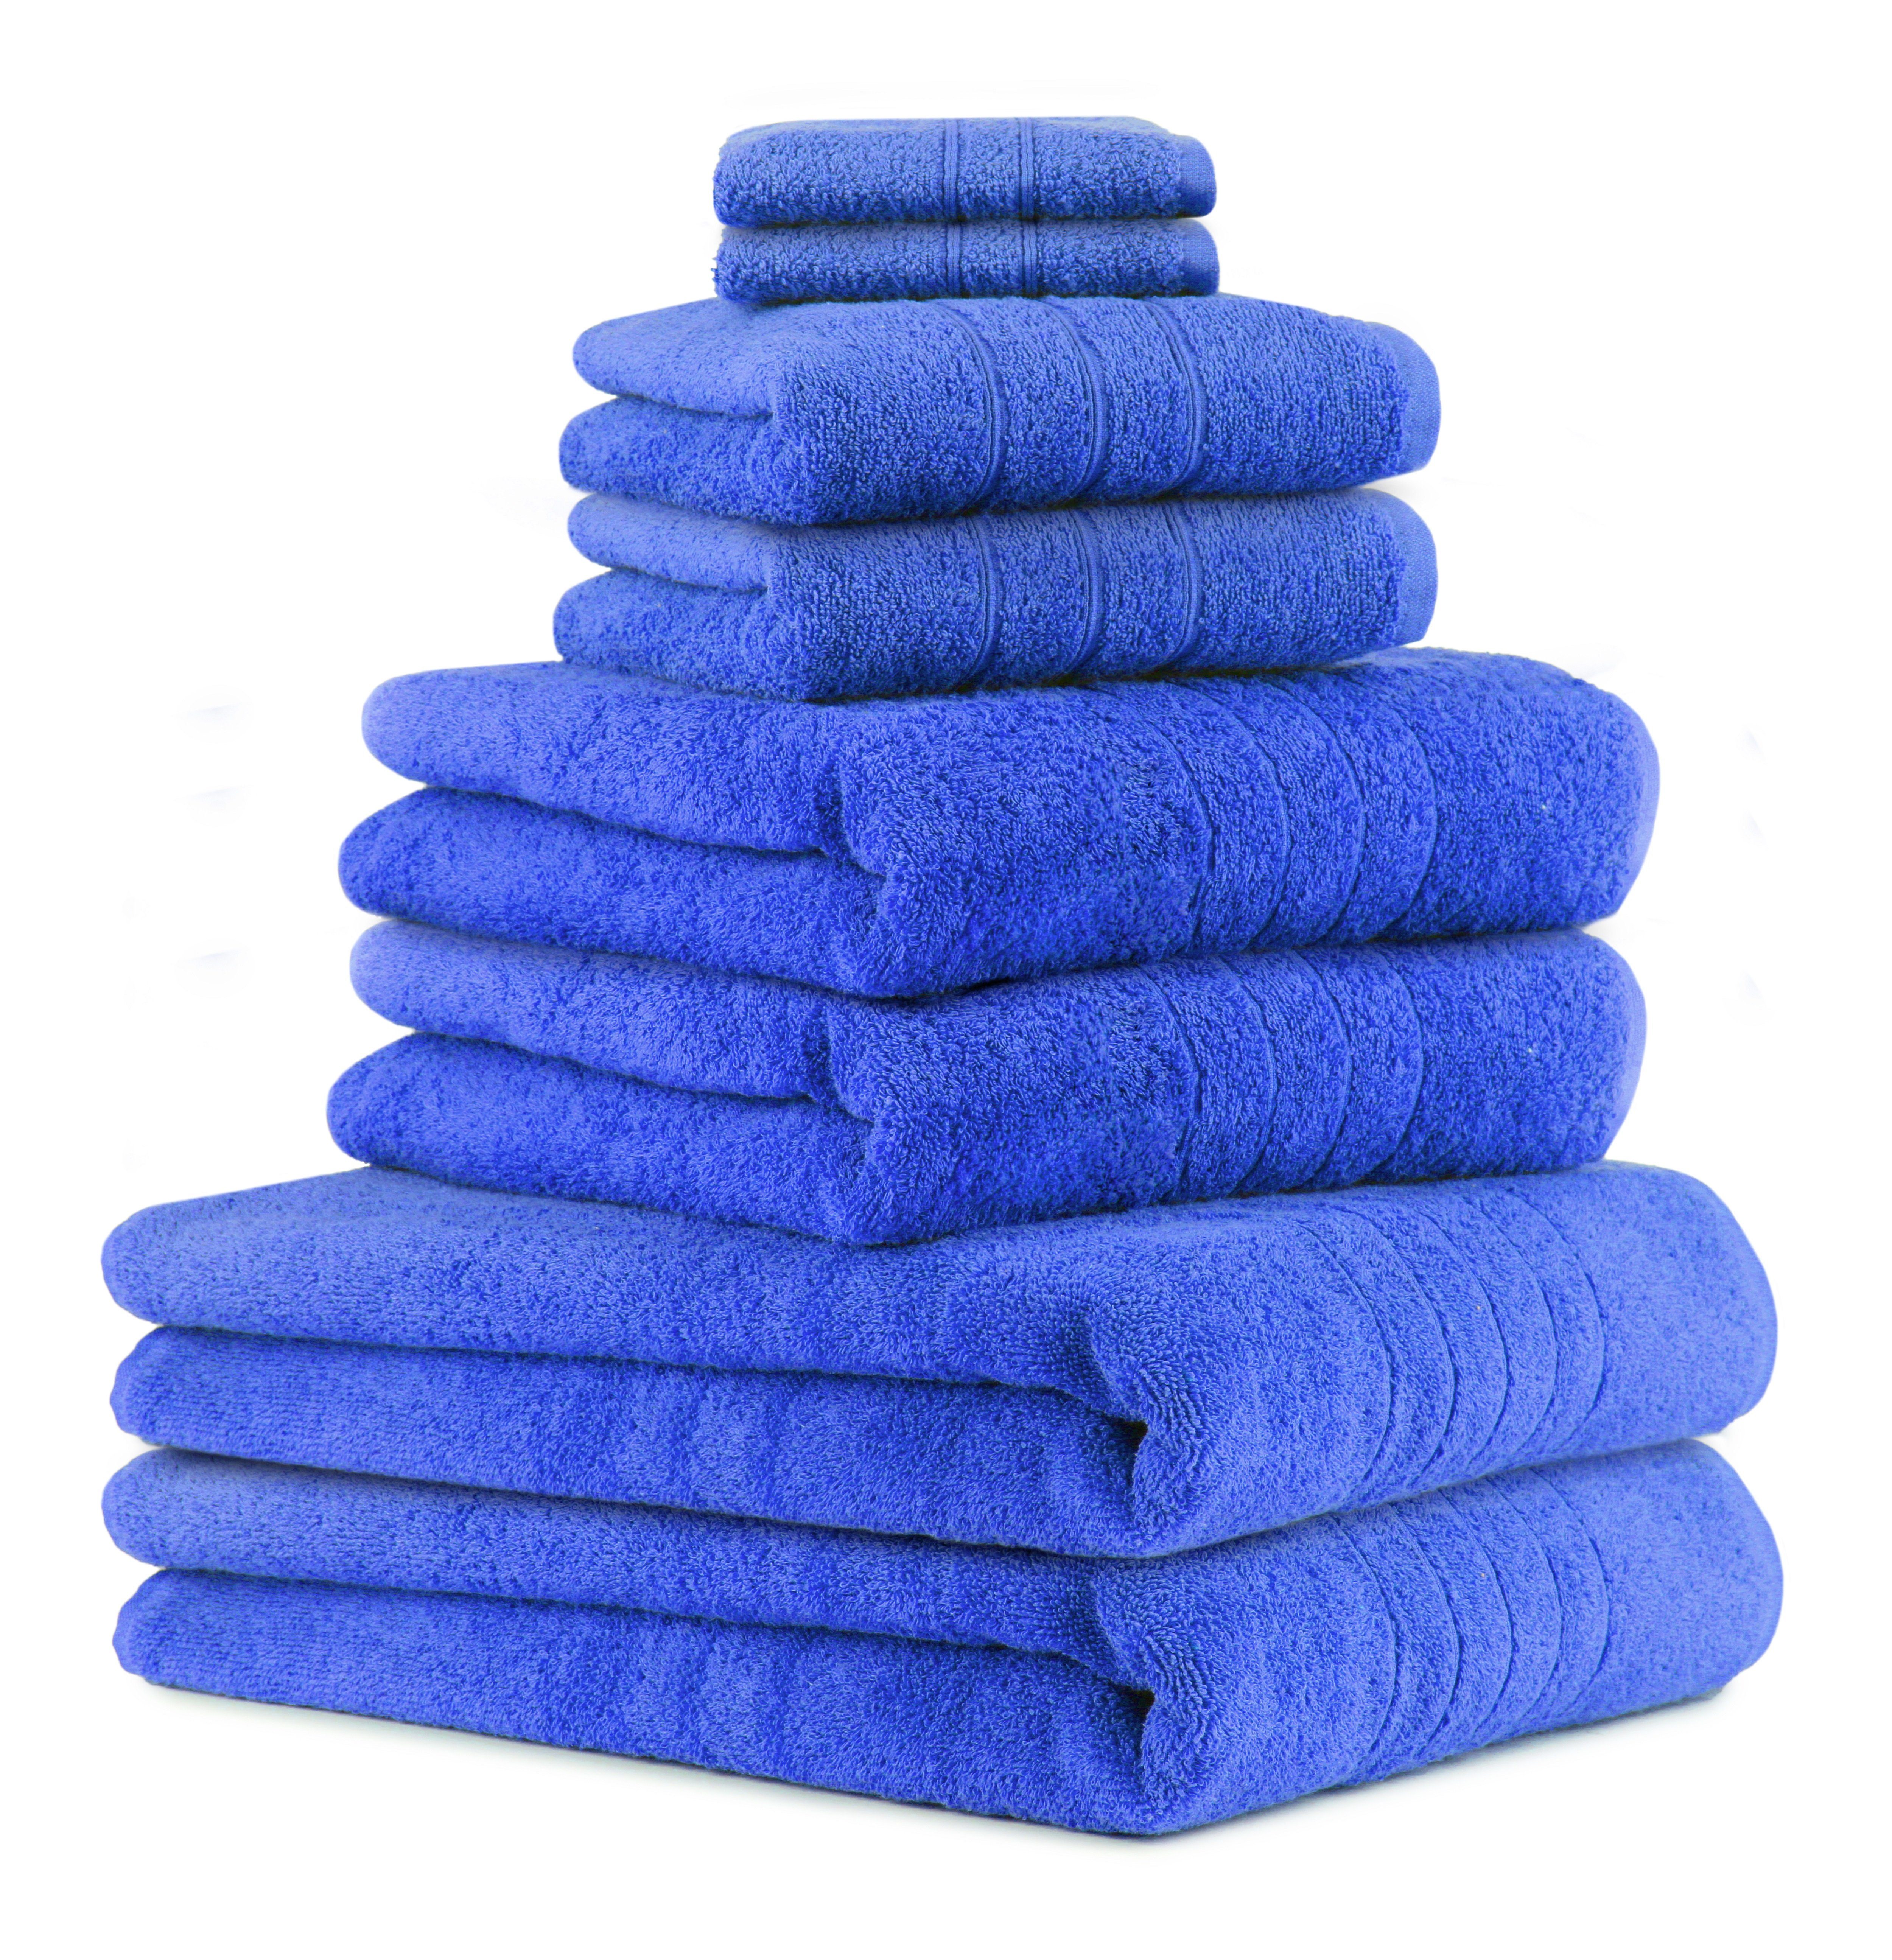 Betz Handtuch Set 8-TLG Handtuch-Set Deluxe 100% Baumwolle 2 Badetücher 2 Duschtücher 2 Handtücher 2 Seiftücher, 100% Baumwolle, (8-tlg) blau